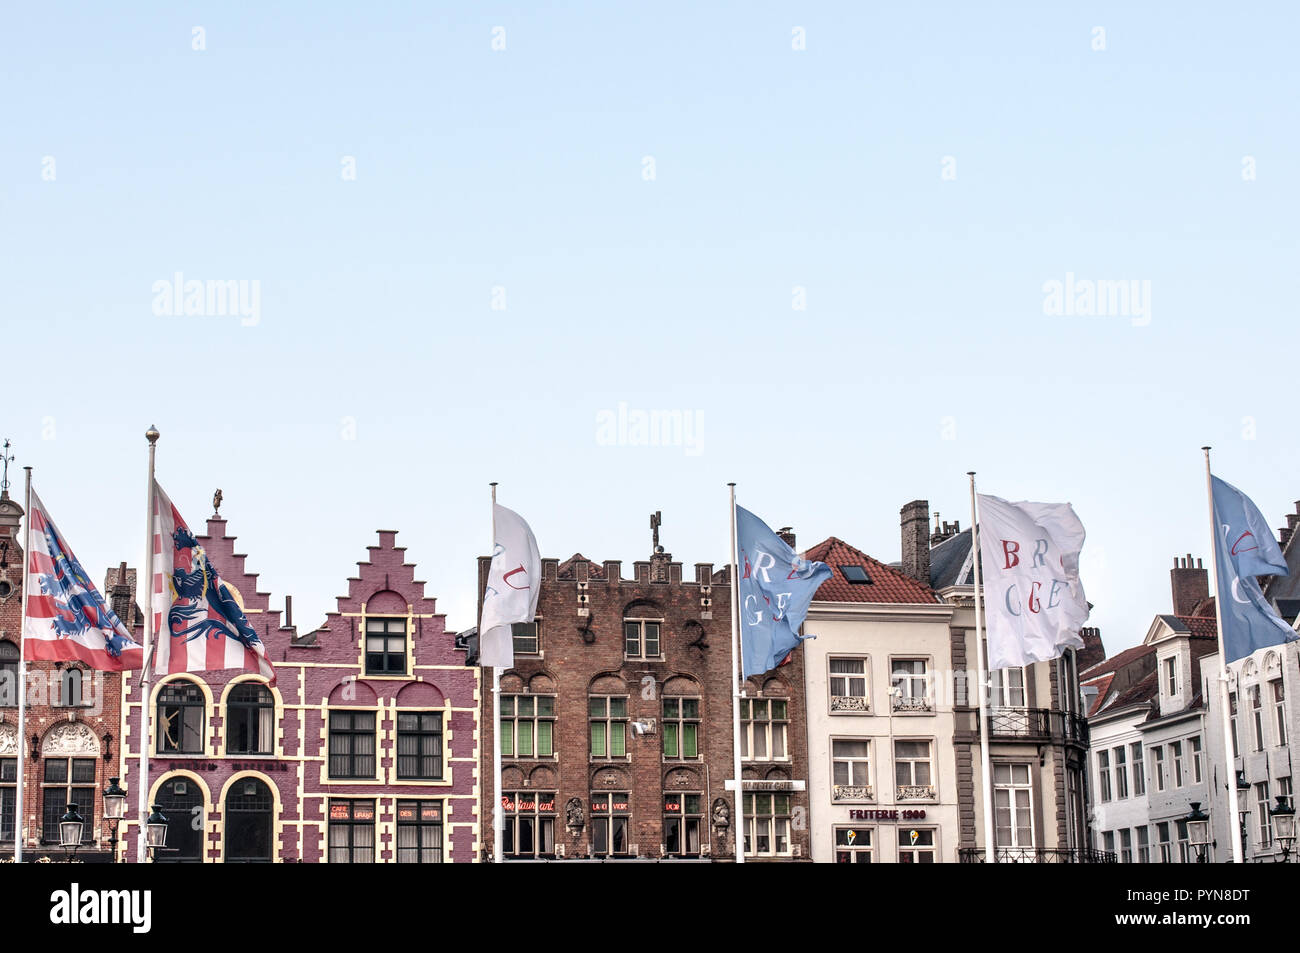 Vue fantastique sur le Markt (Marché) avec ses bâtiments colorés et drapeaux belge flamand de Bruges, Belgique, Flandre, Europe. Patrimoine de l'Unesco. Banque D'Images